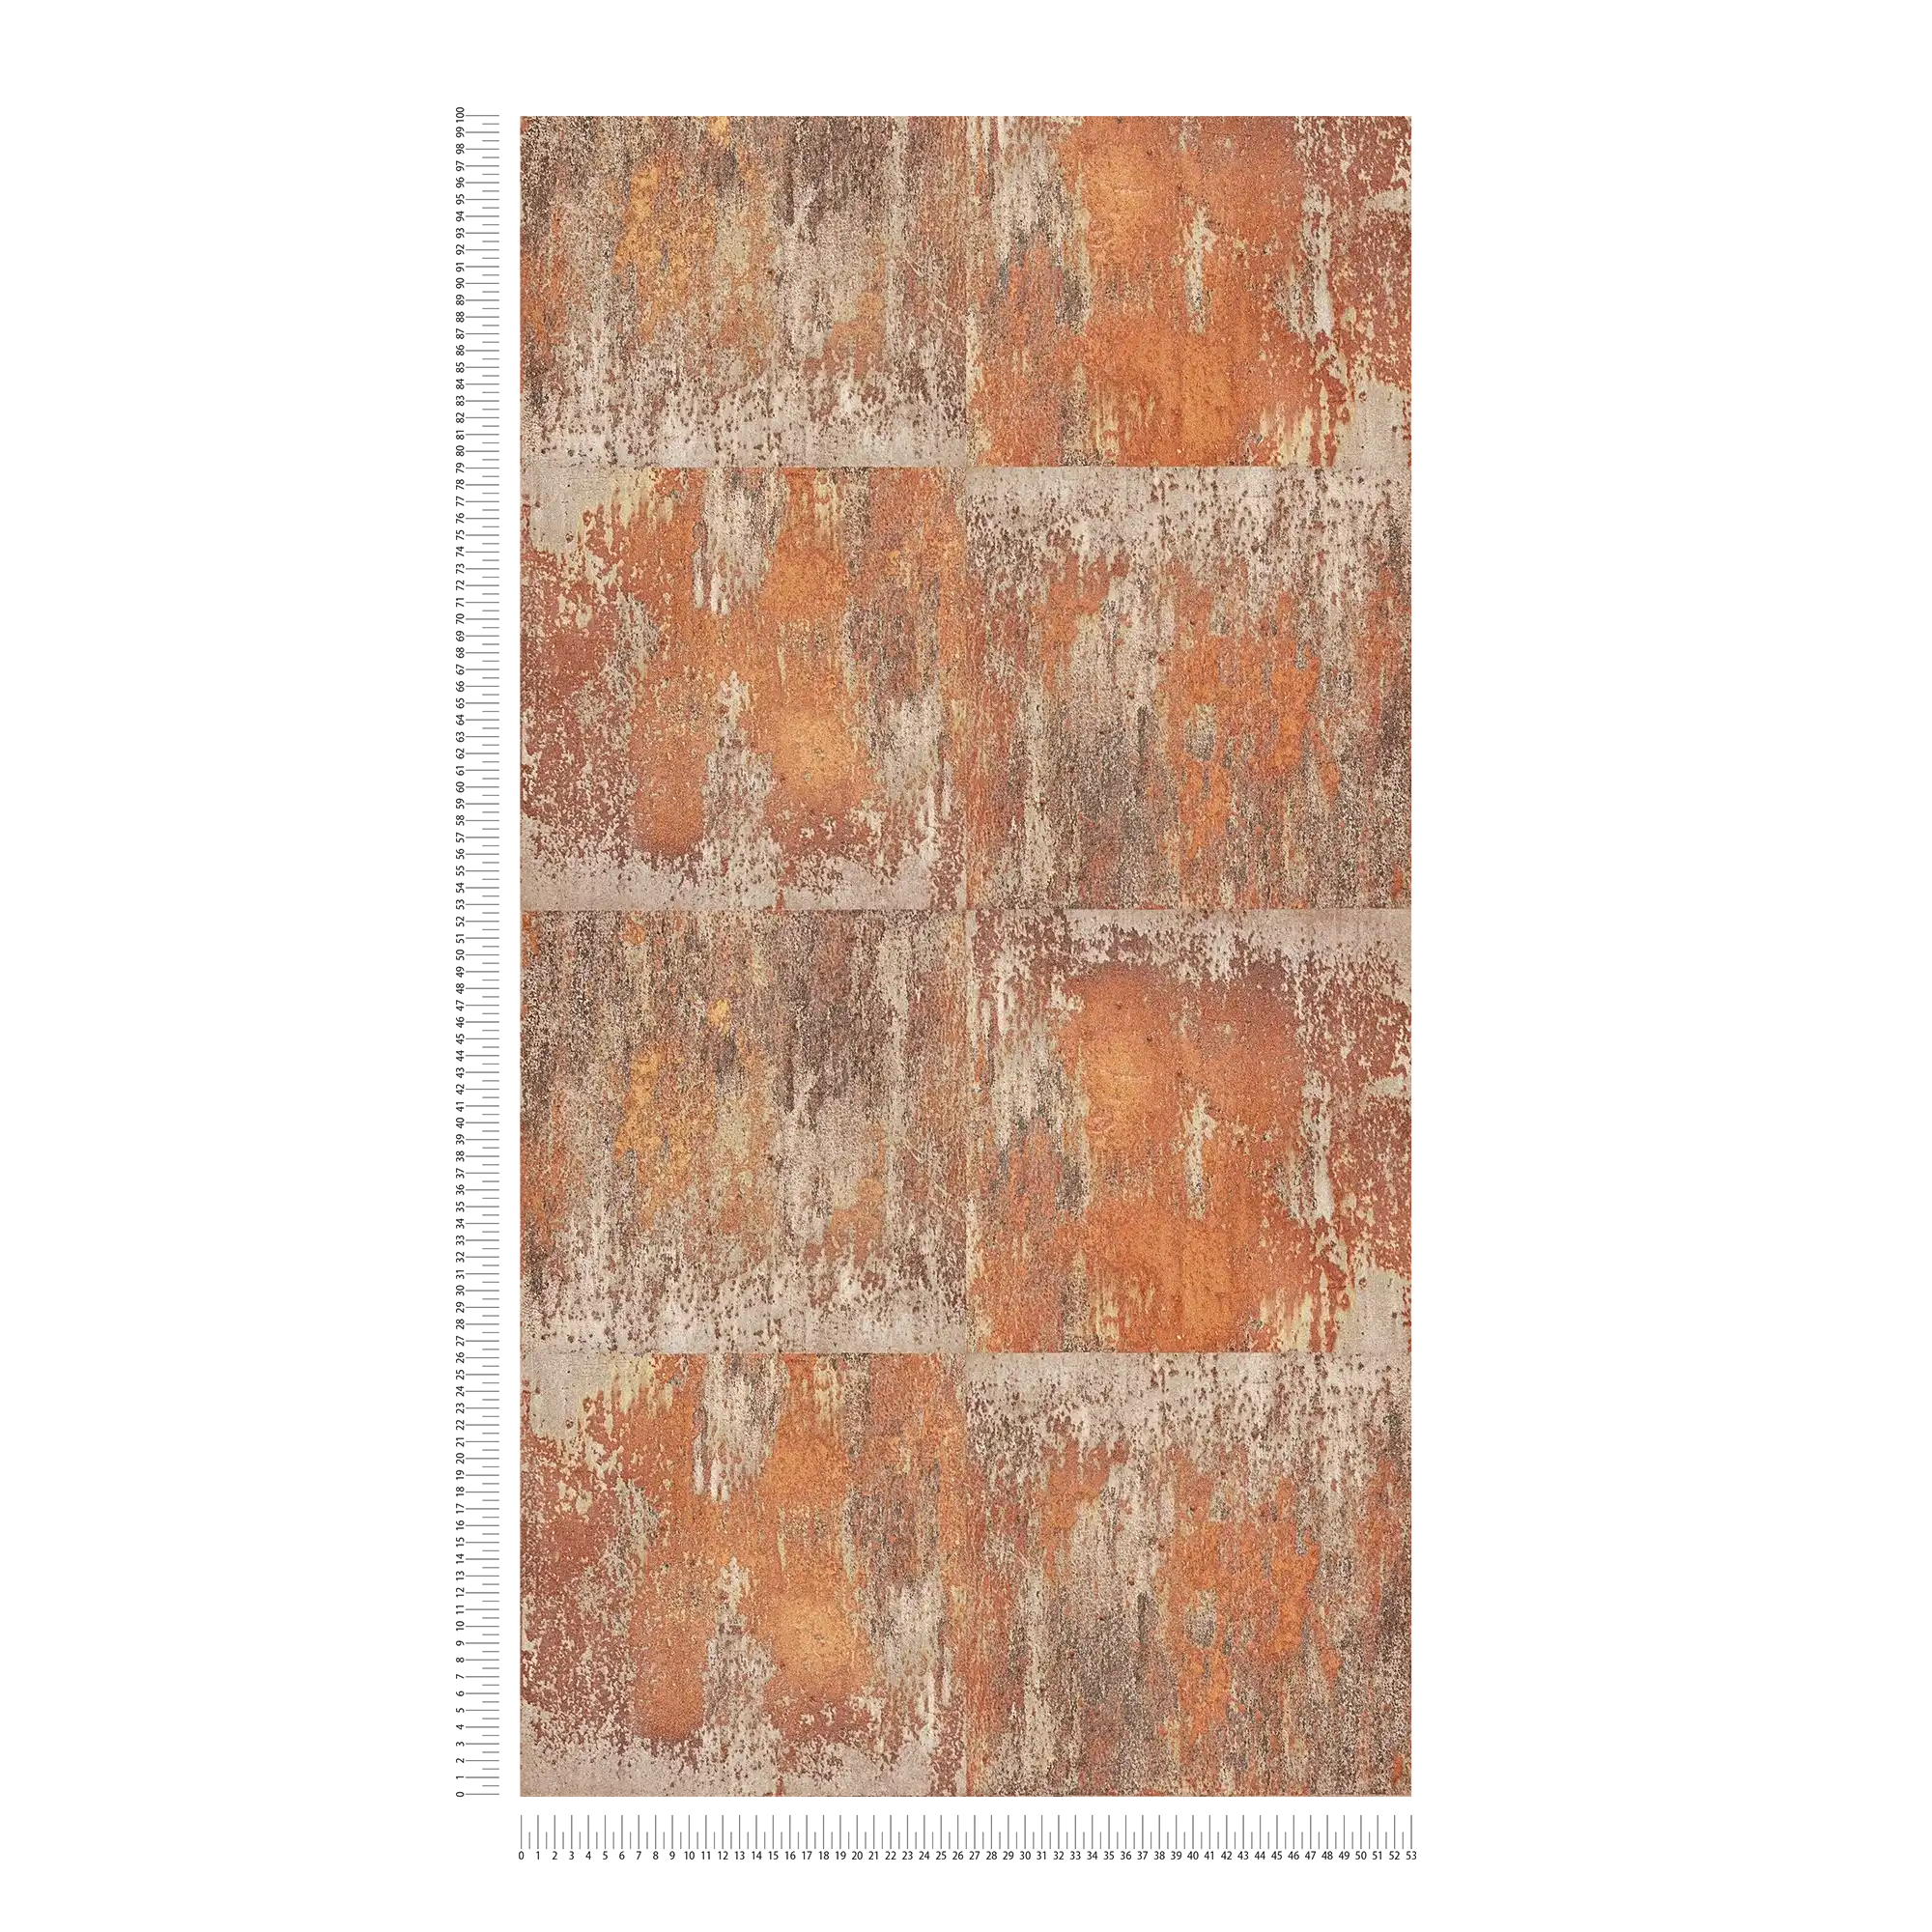             Vliesbehang patina design met roest en koper effecten - oranje, bruin, koper
        